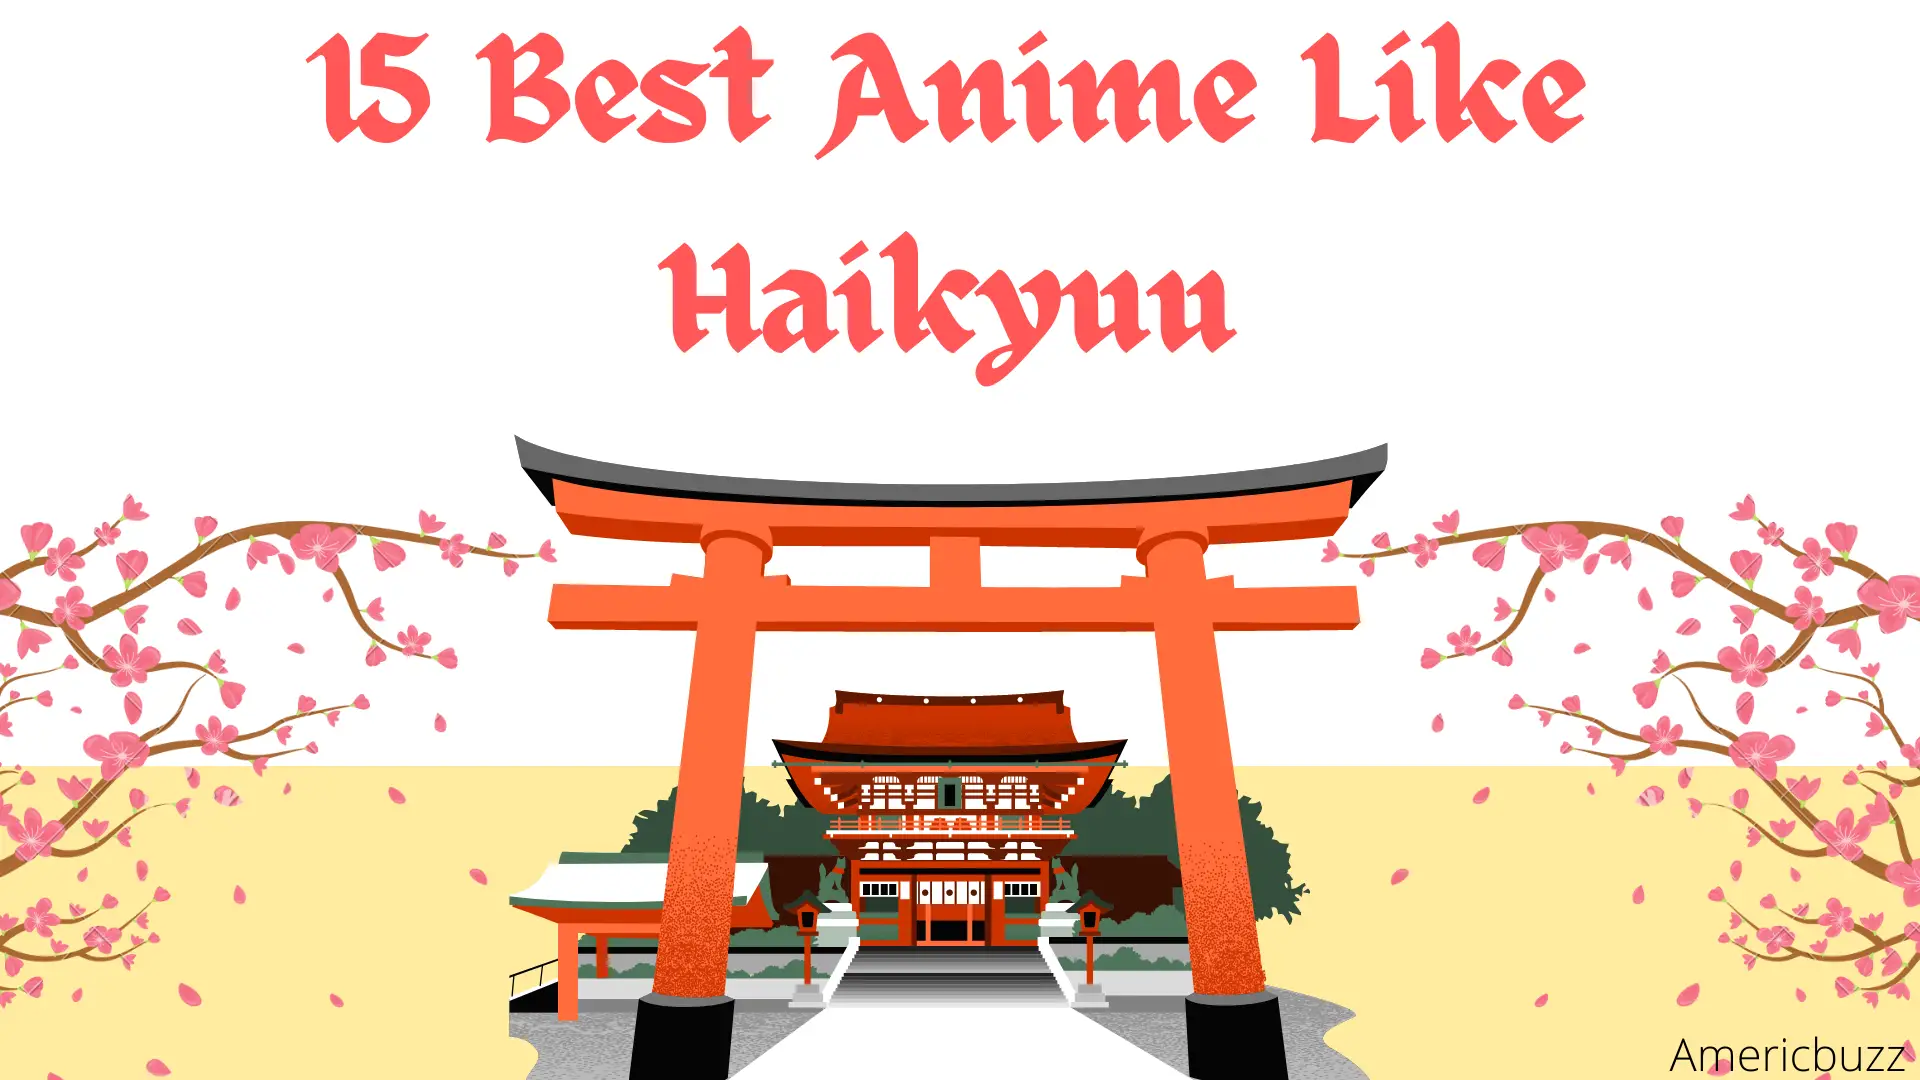 Best Anime Like Haikyuu